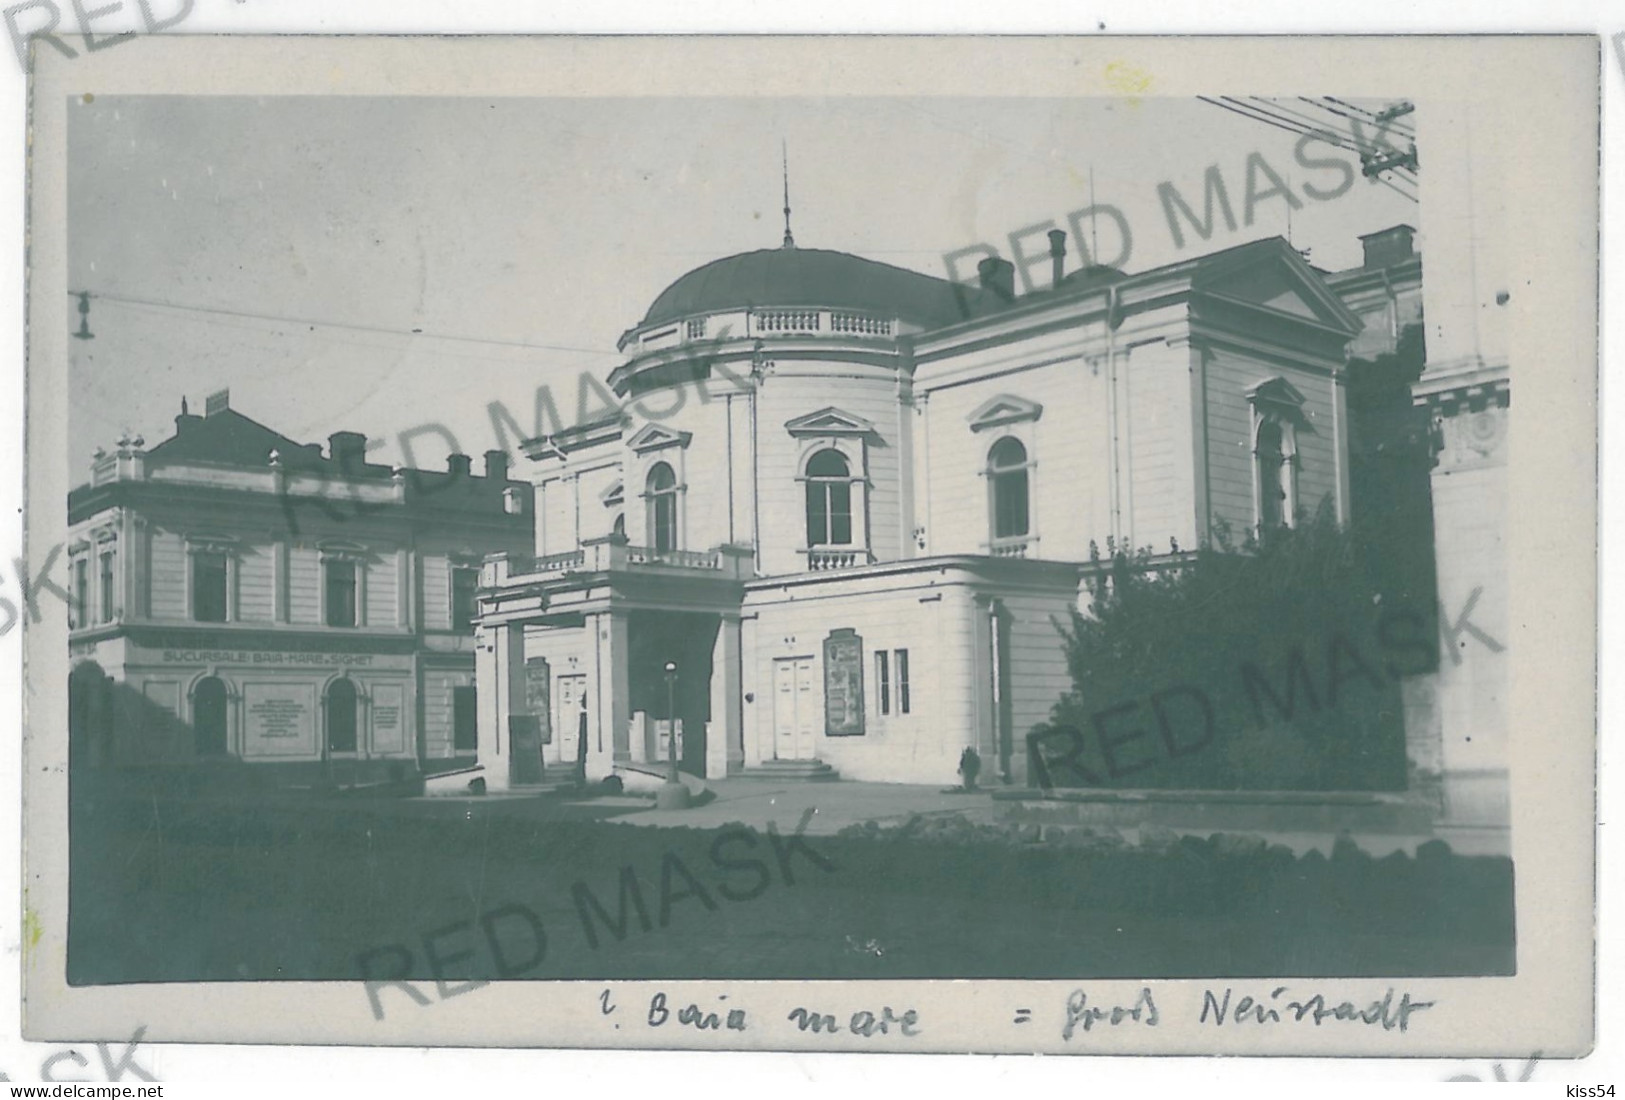 RO 82 - 11400 BAIA MARE, Maramures, Romania - Old Postcard, Real PHOTO - Used - 1928 - Romania